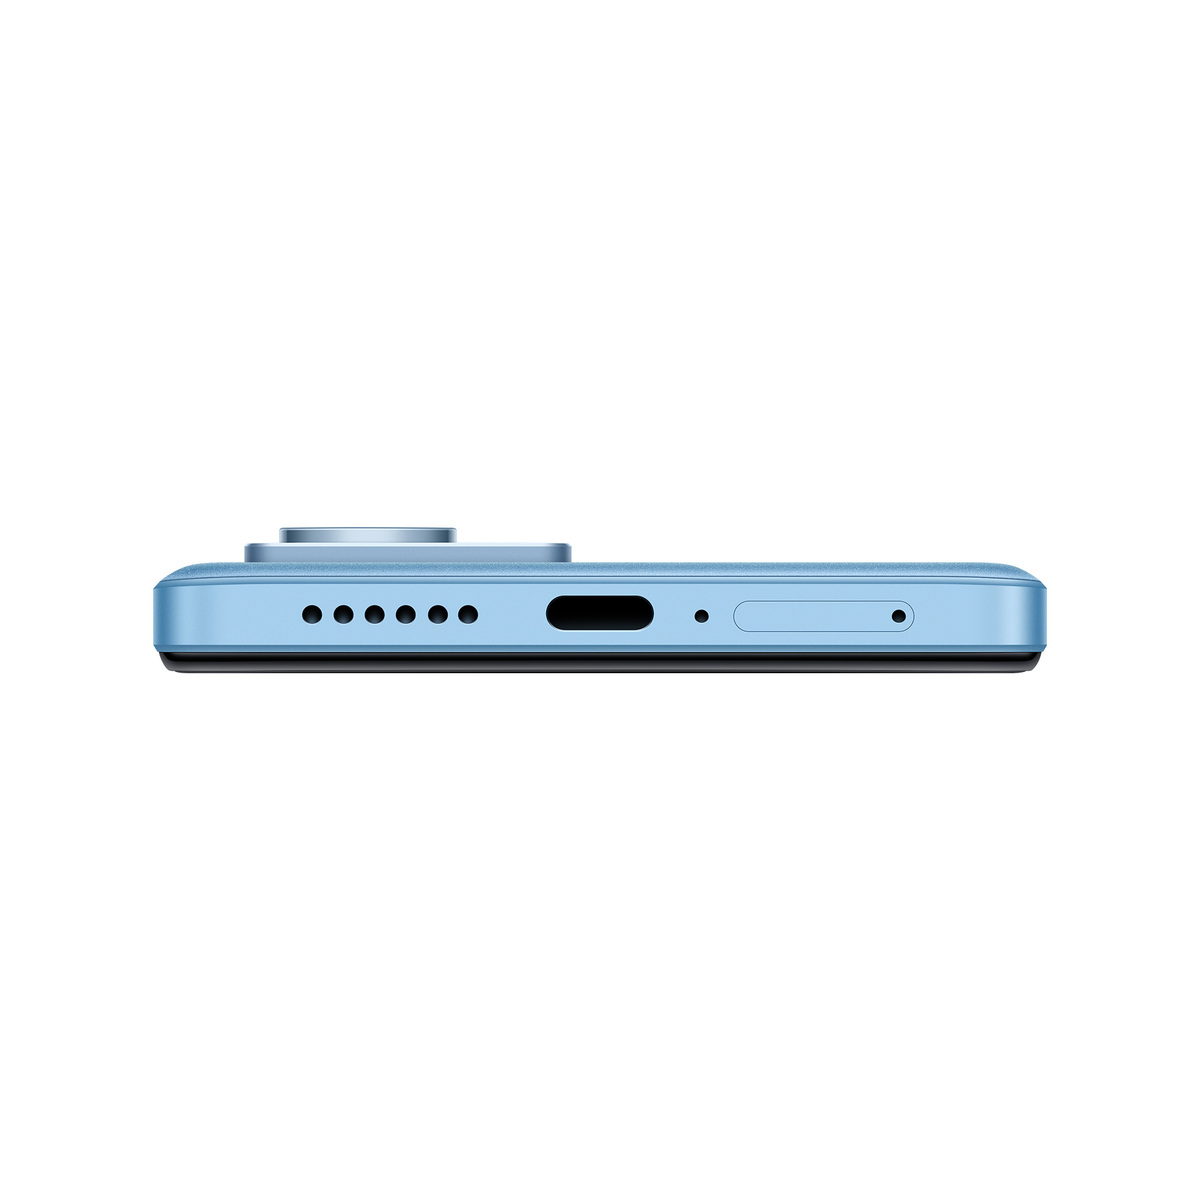 شاومي بوكو X4 GT  شبكه 5G أزرق ،رام 8 جيجا بايت ،مساحة تخزين 256 جيجا بايت